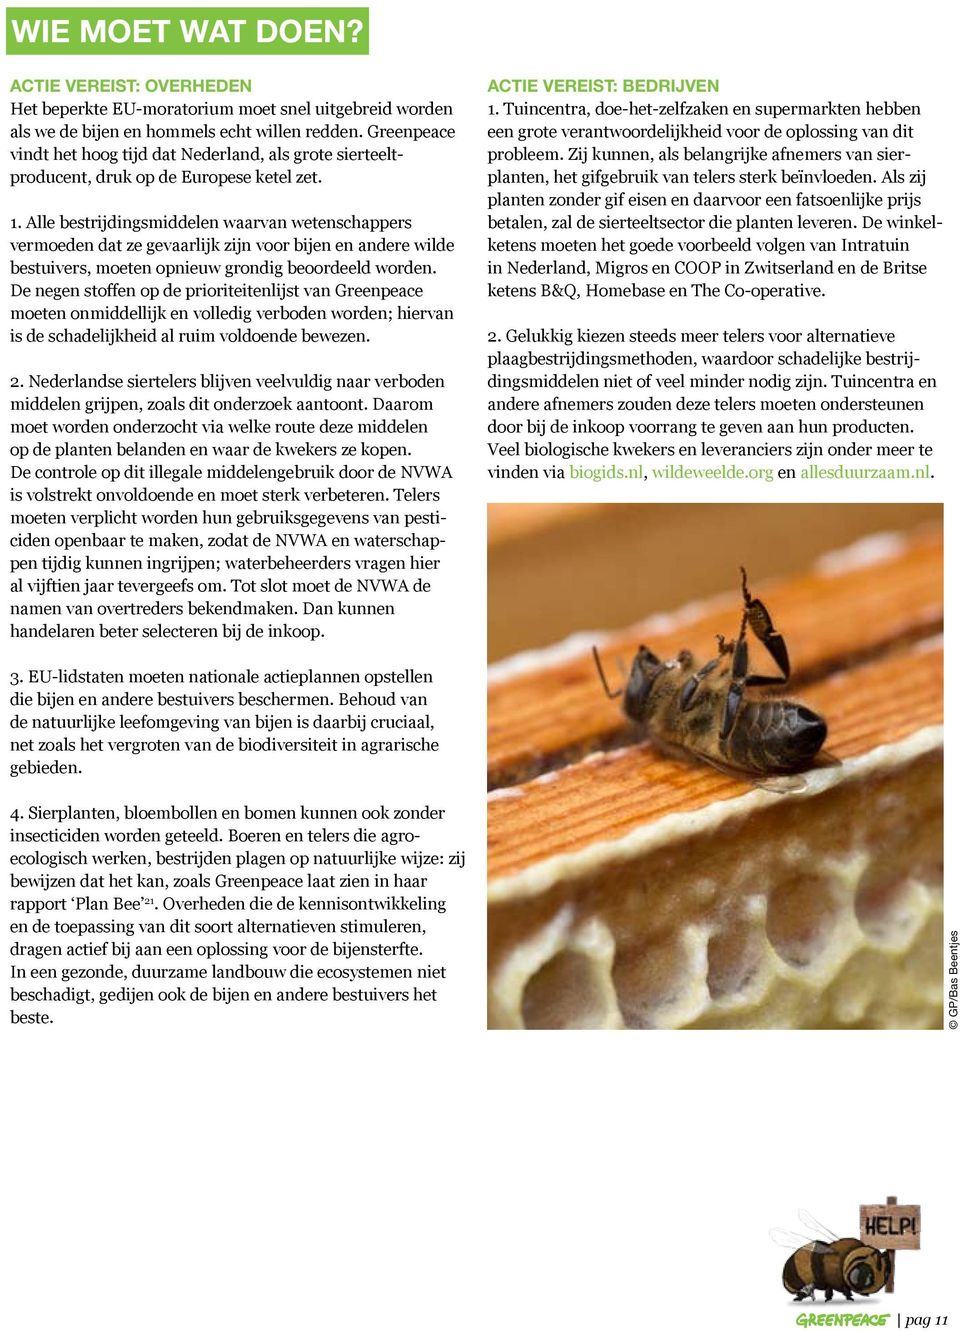 Alle bestrijdingsmiddelen waarvan wetenschappers vermoeden dat ze gevaarlijk zijn voor bijen en andere wilde bestuivers, moeten opnieuw grondig beoordeeld worden.